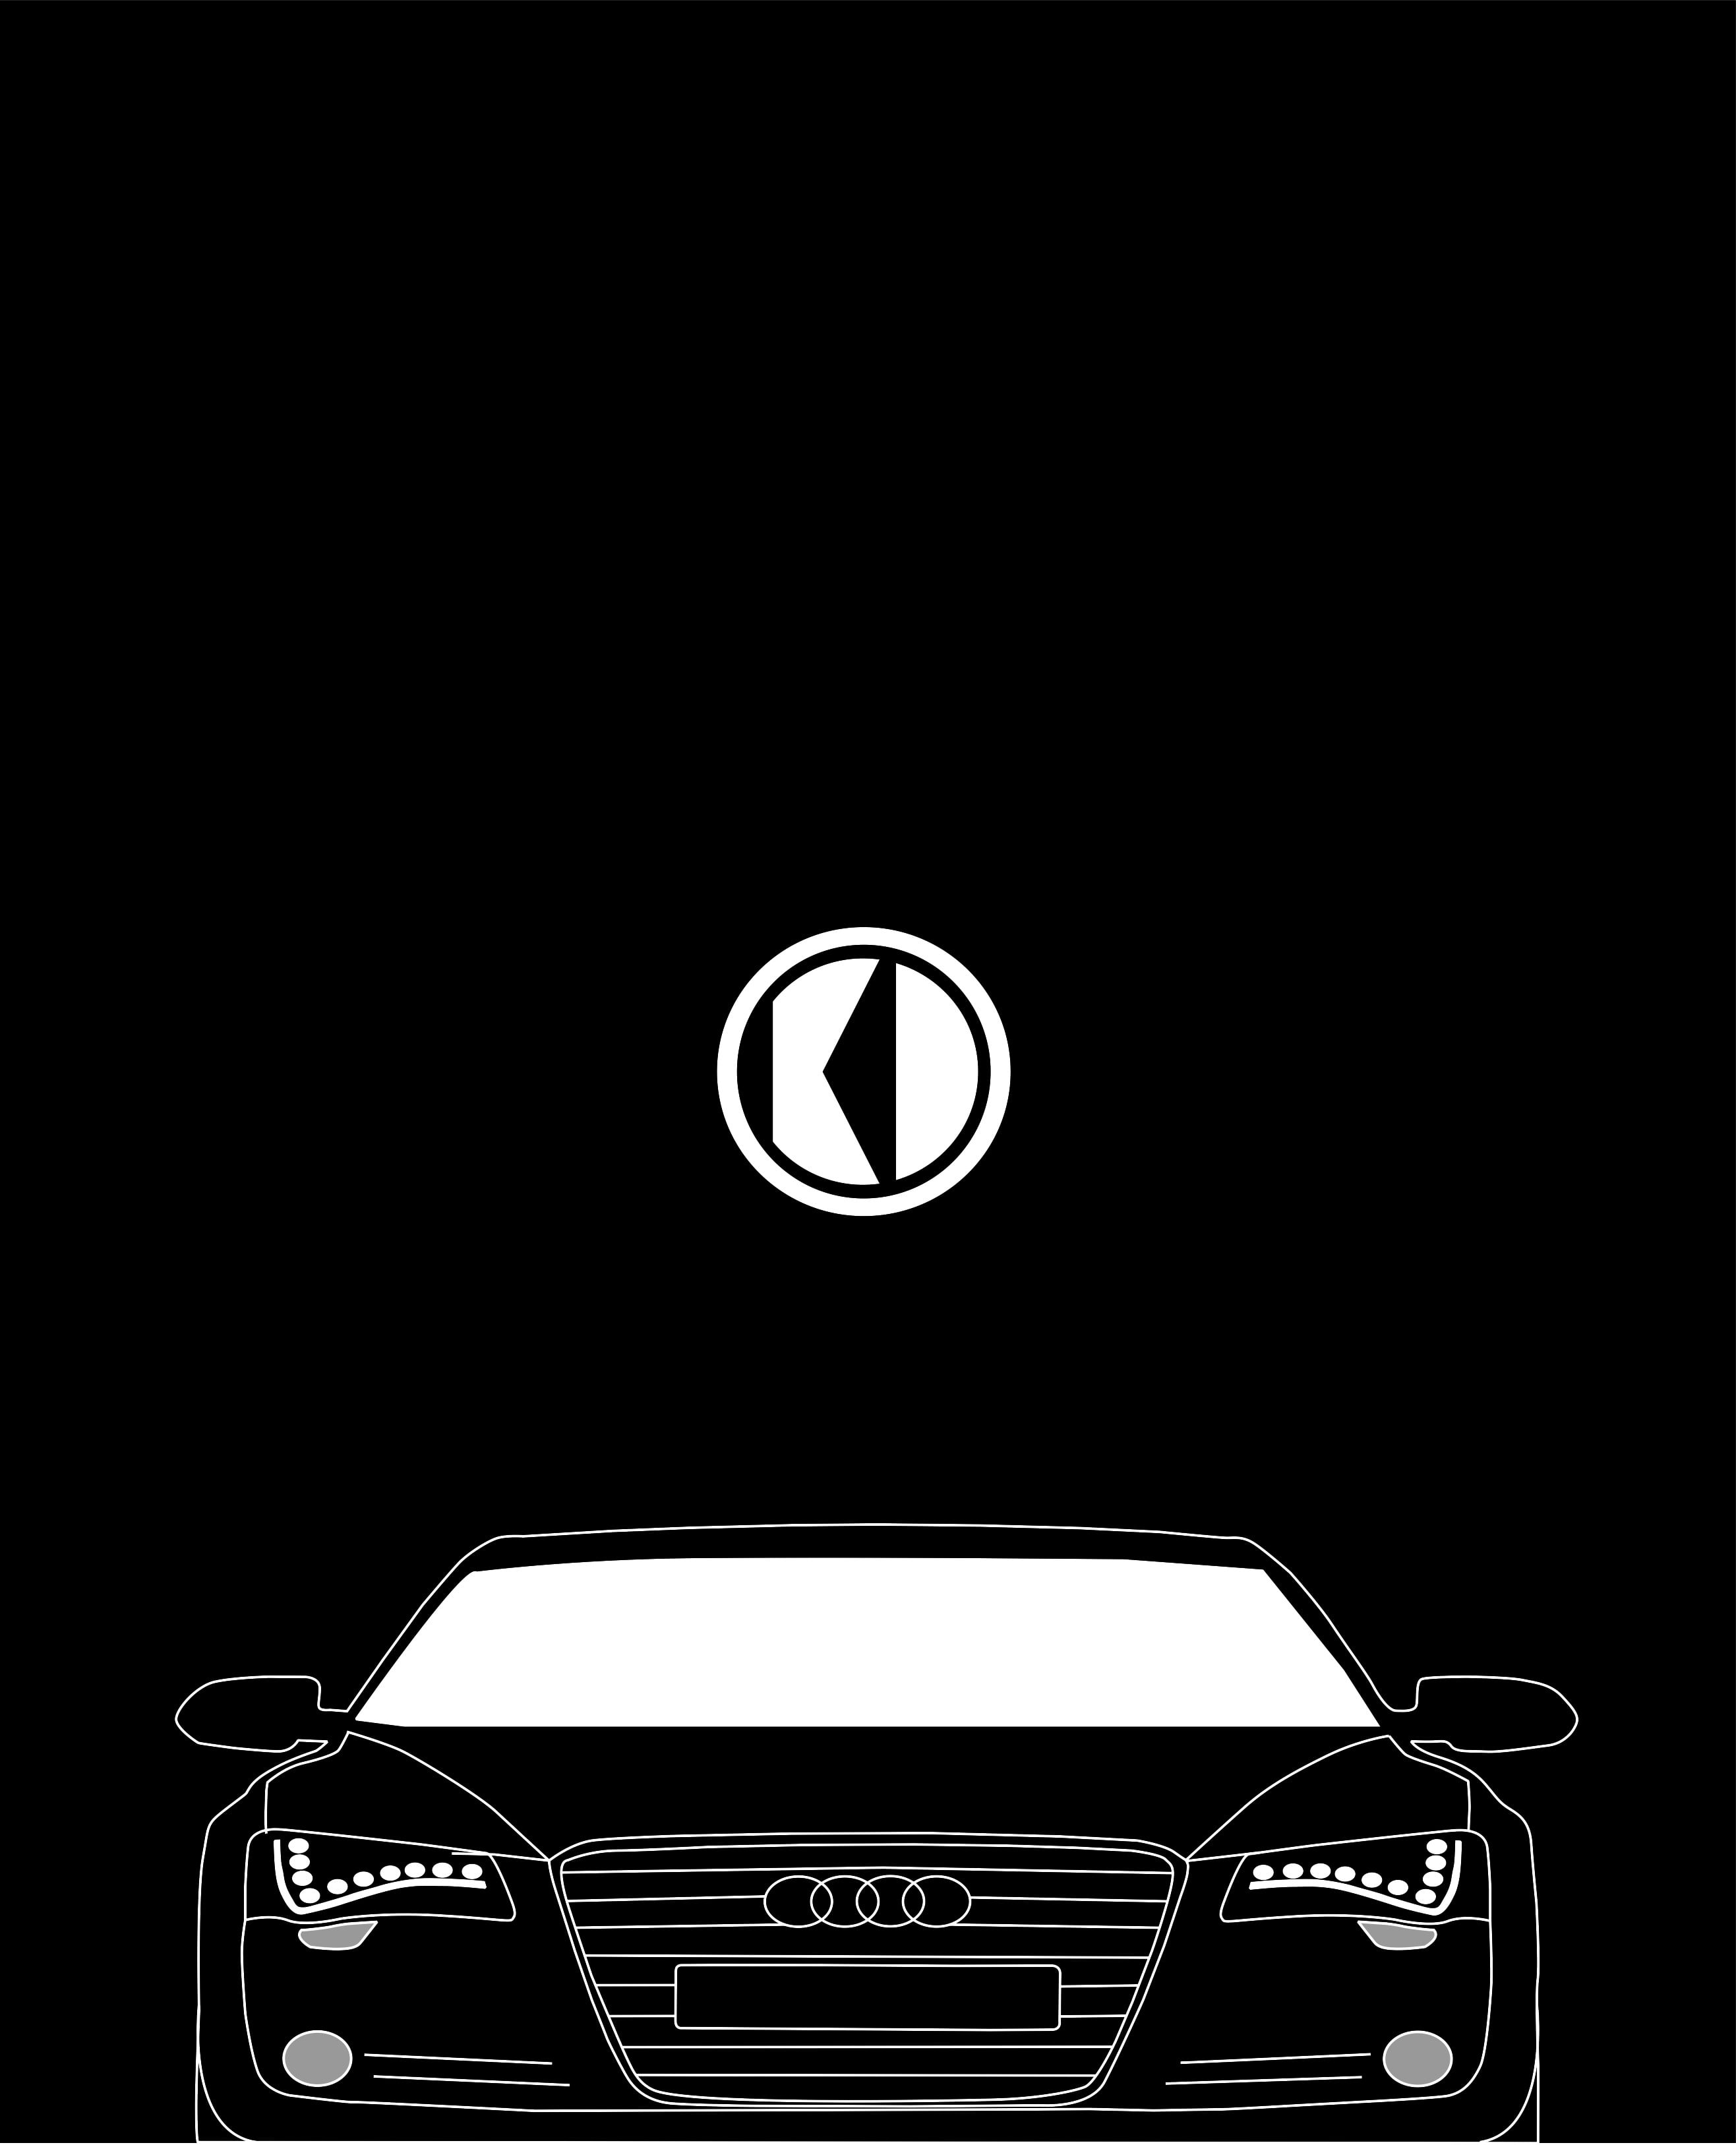 Audi R18 e-tron quattro, minimalism, illuminated, car, copy space